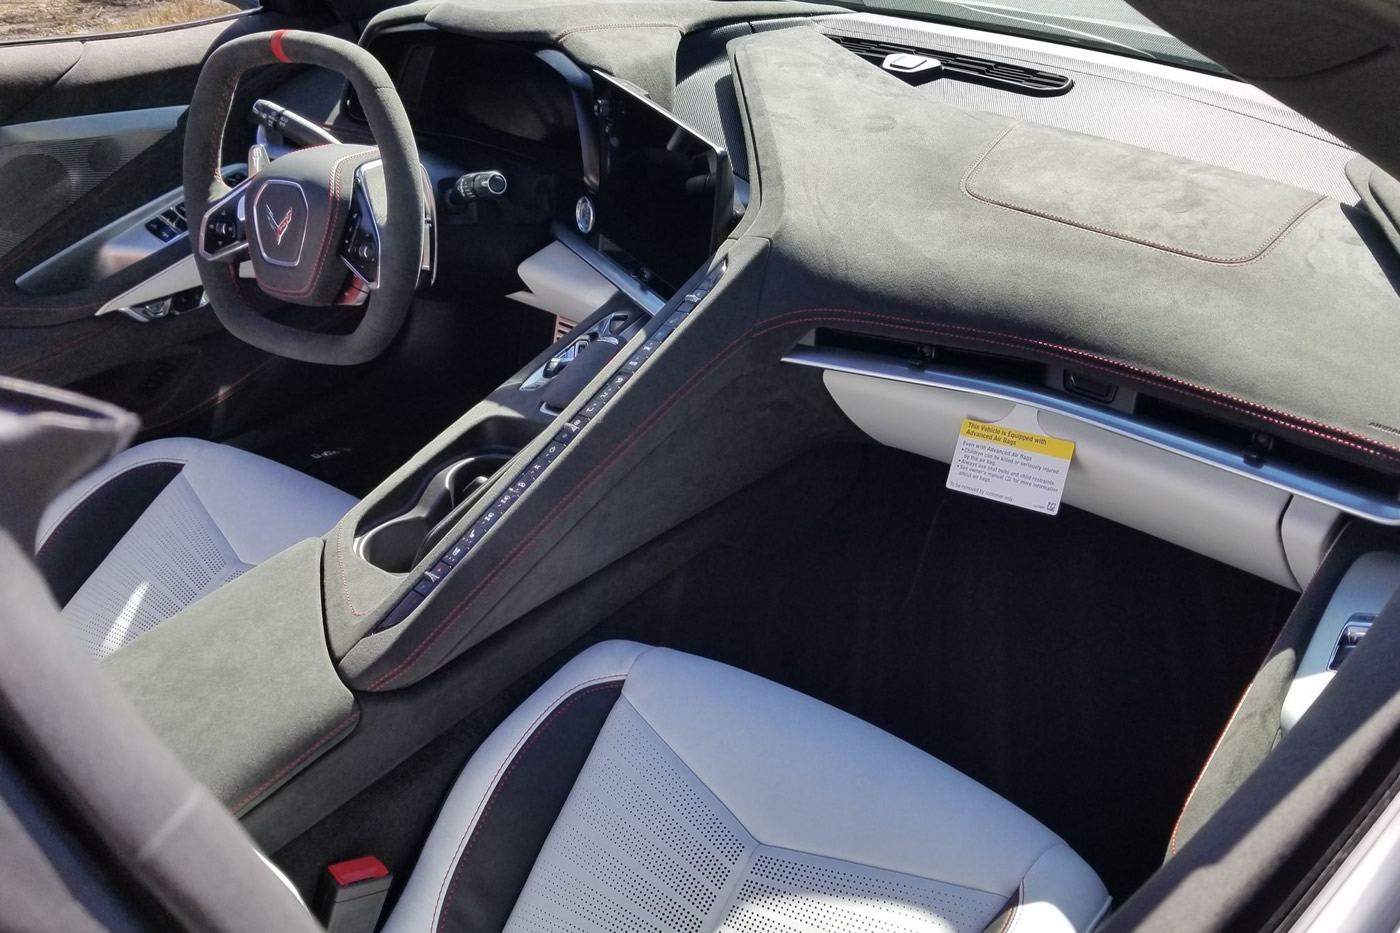 2023 Corvette Stingray 70th Anniversary Convertible in White Pearl Metallic